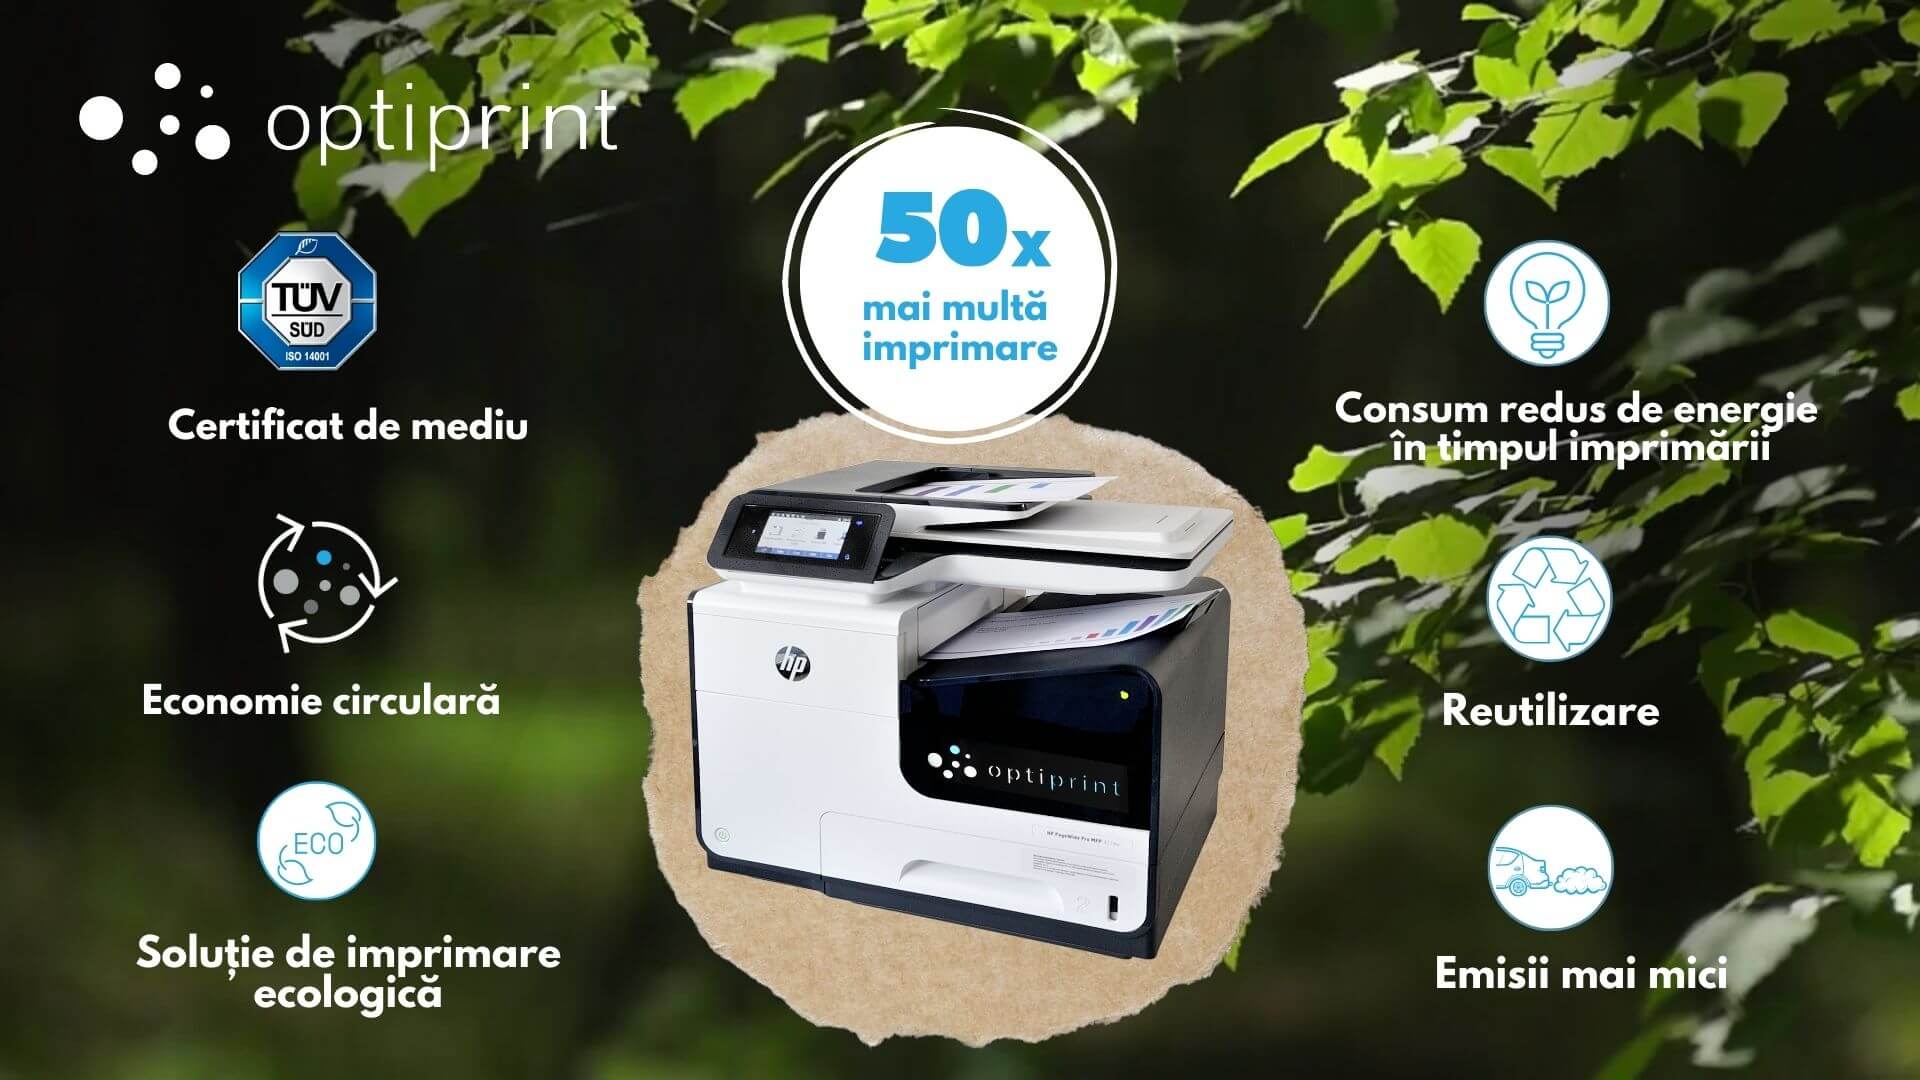 Dezvoltare durabilă - Închiriere imprimante - Soluție ecologică - OPTIPRINT